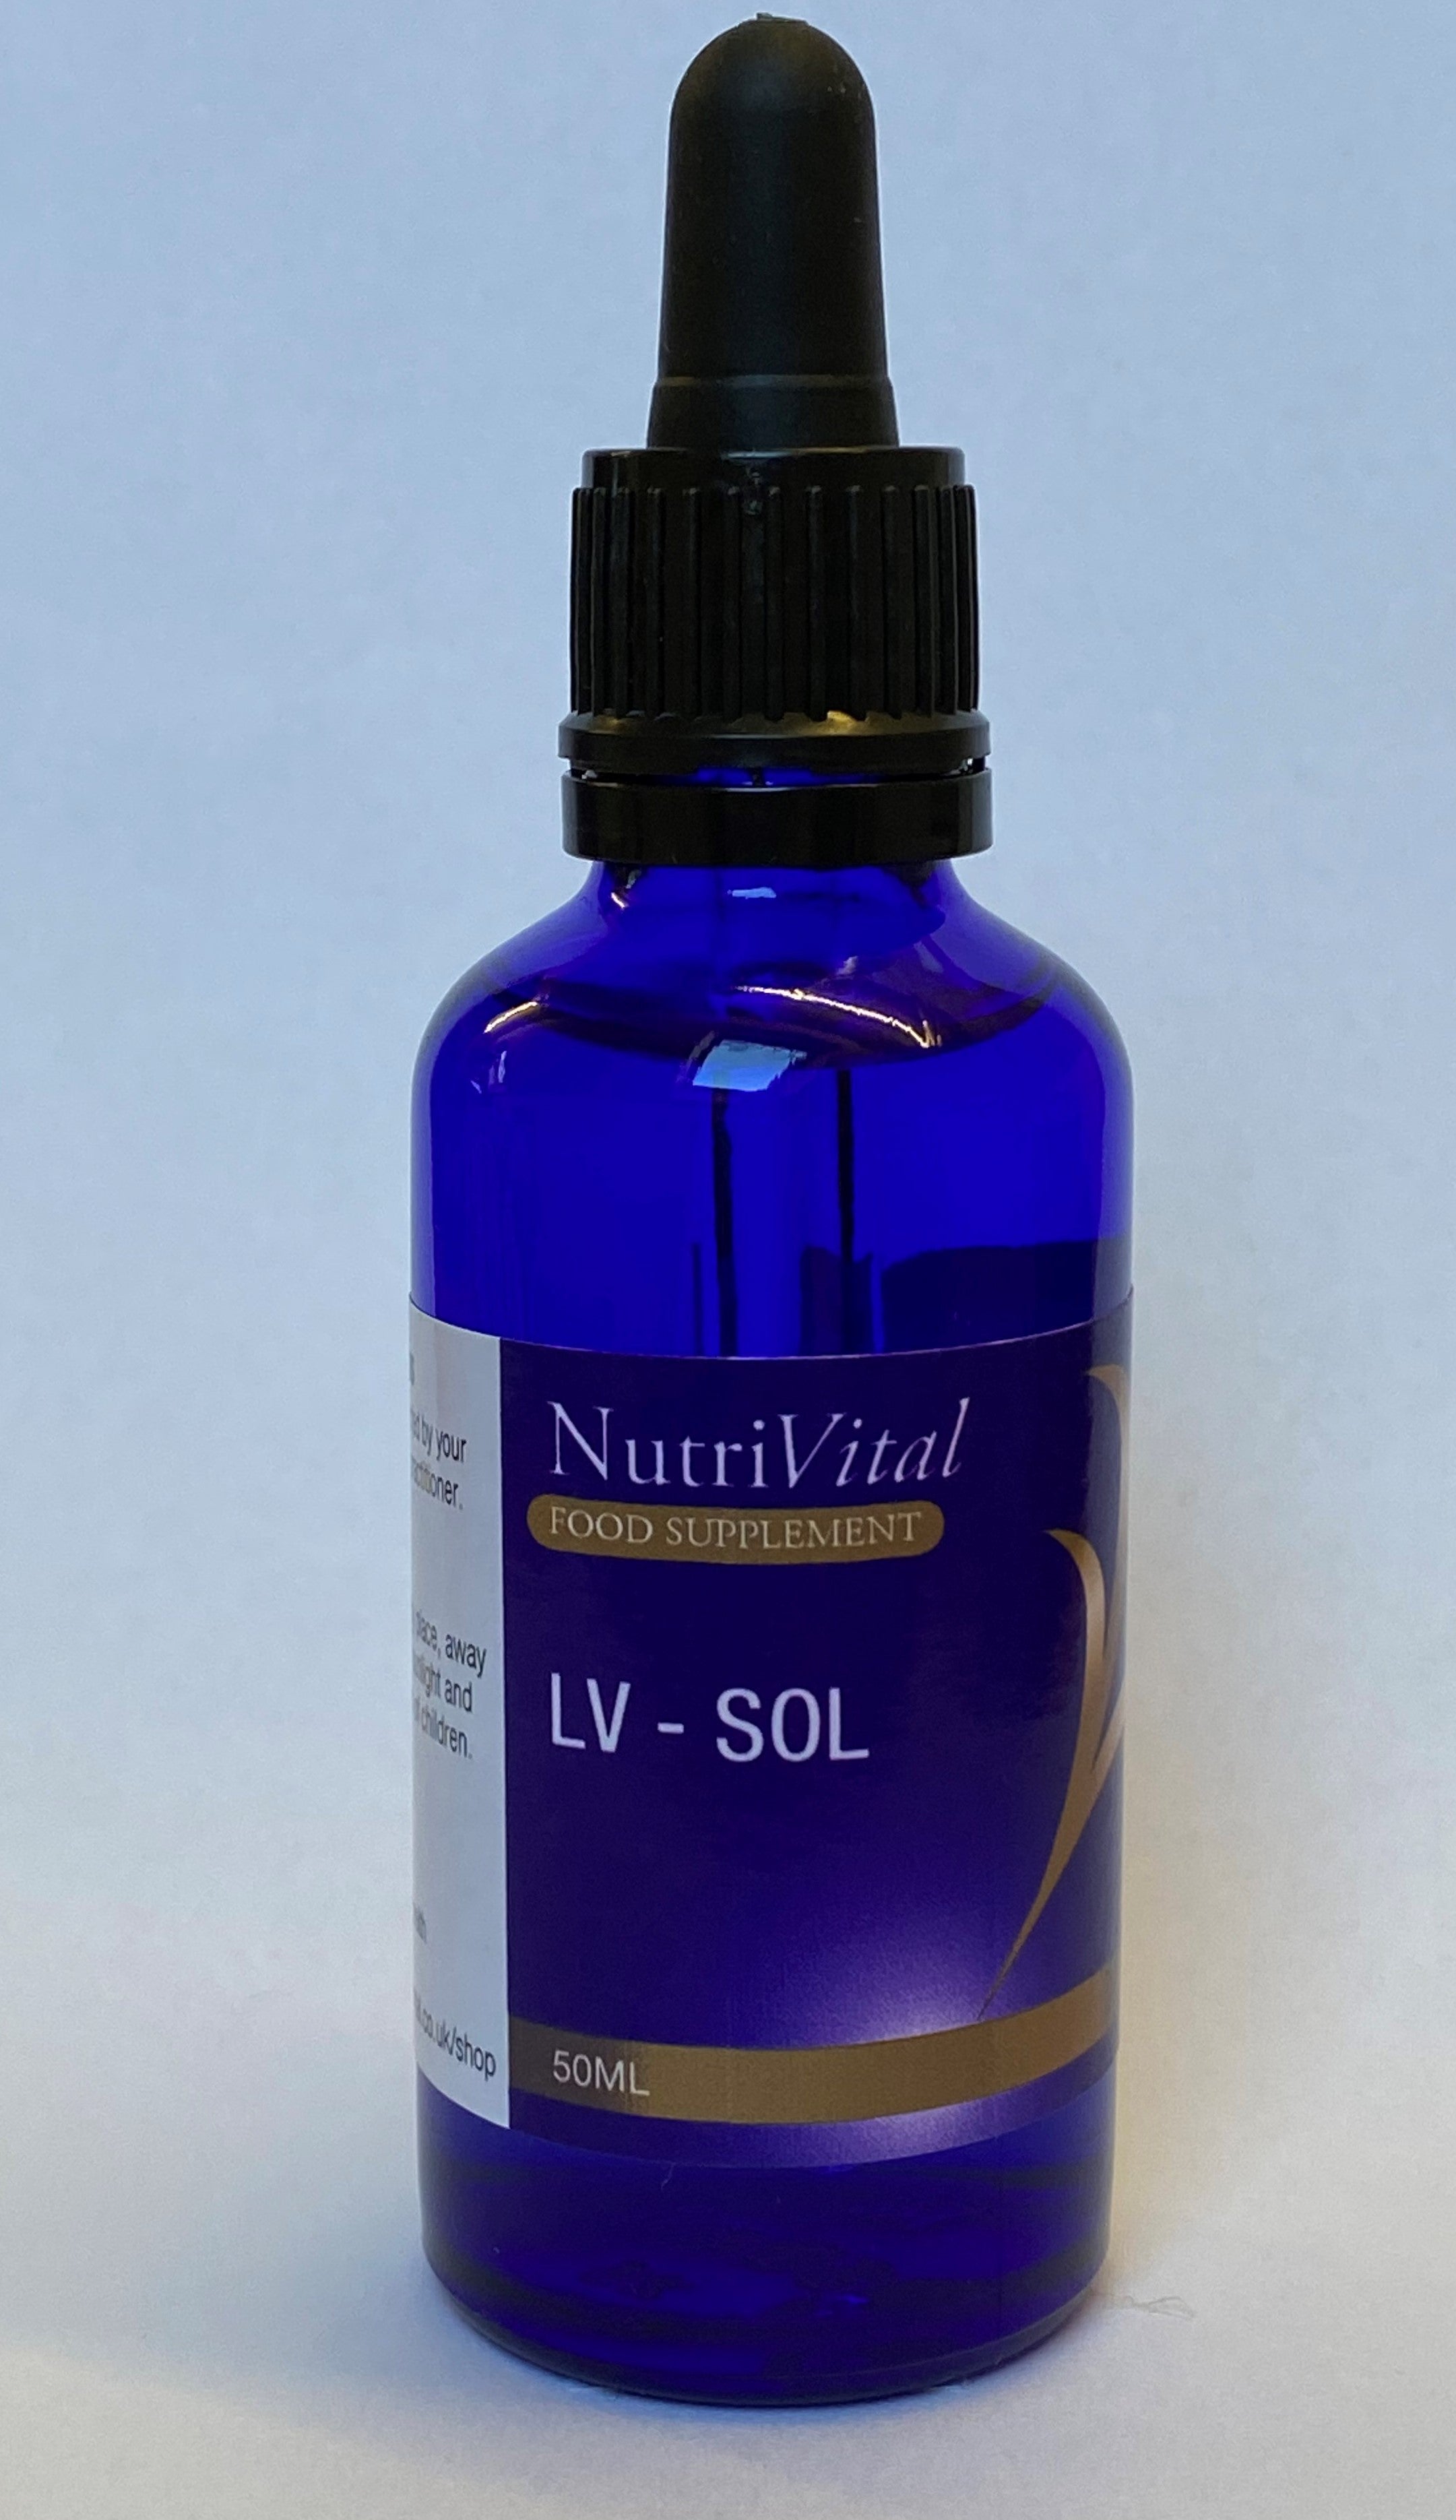 Nutrivital LV-SOL 50ml